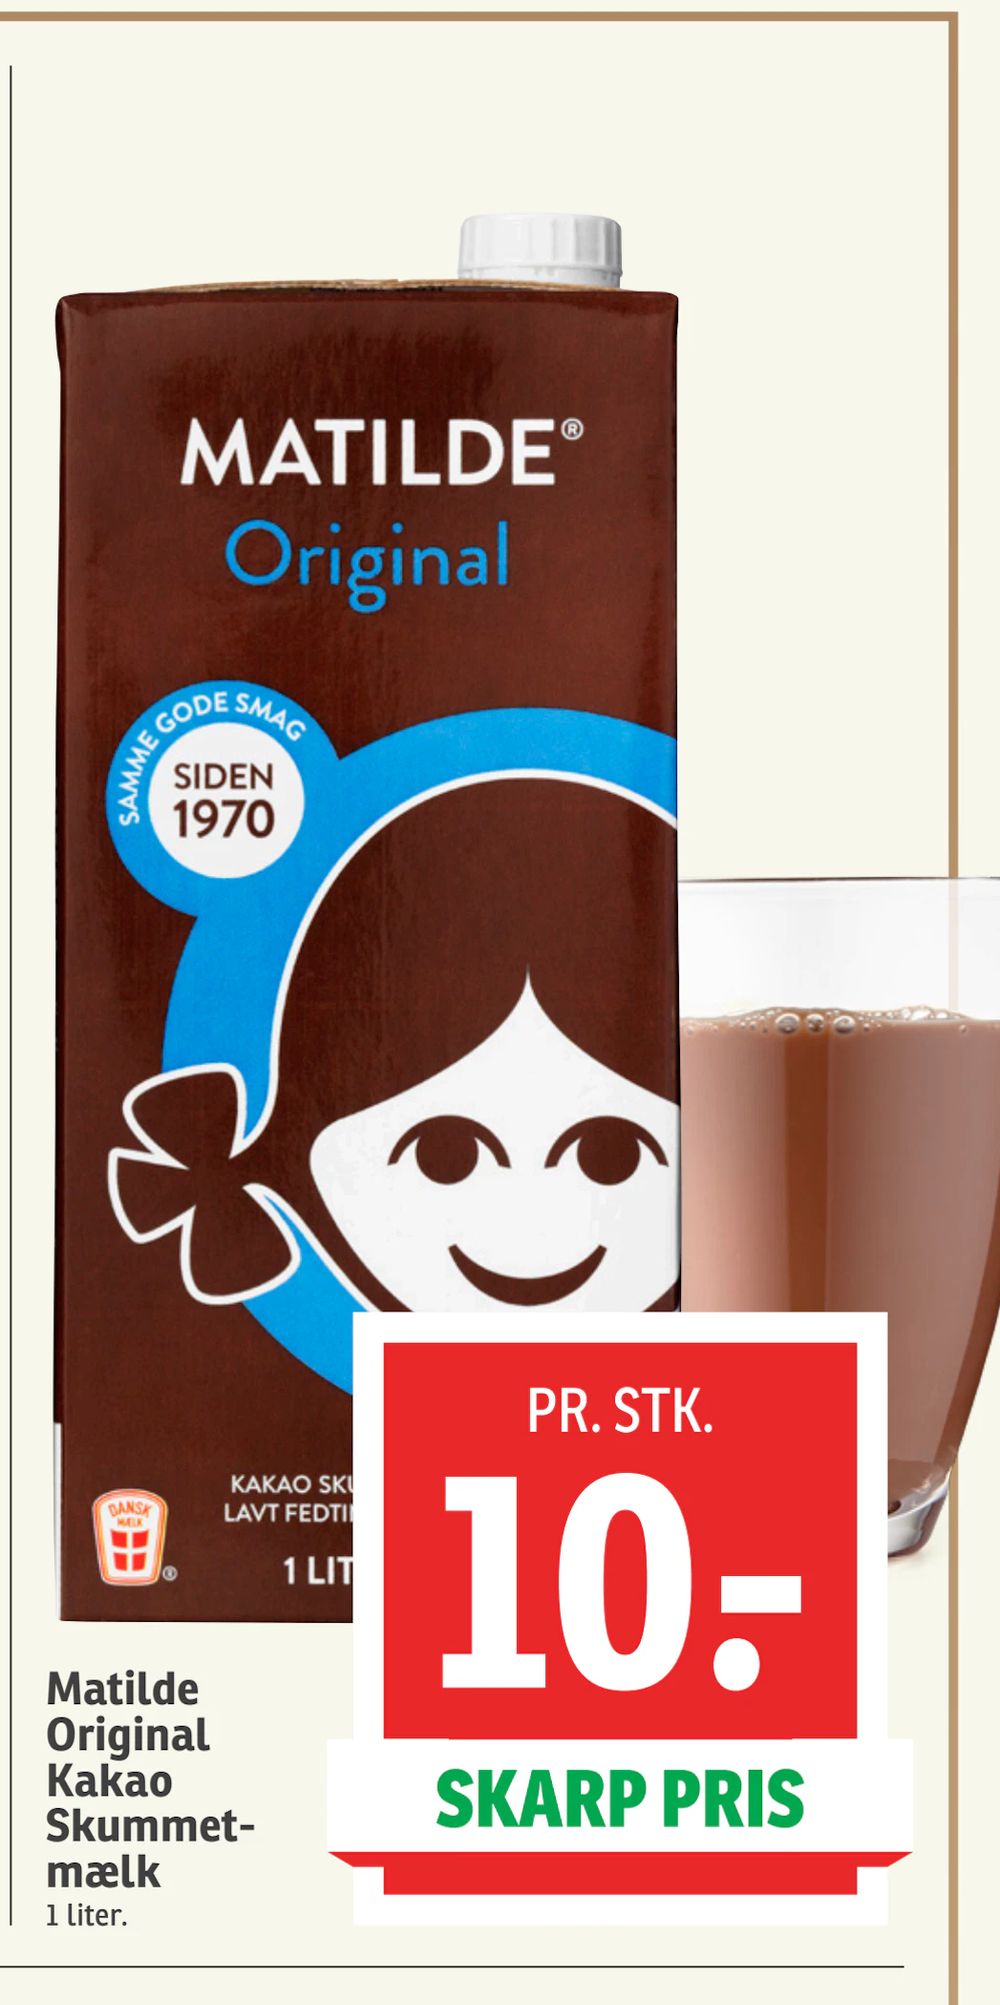 Tilbud på Matilde Original Kakao Skummetmælk fra SPAR til 10 kr.